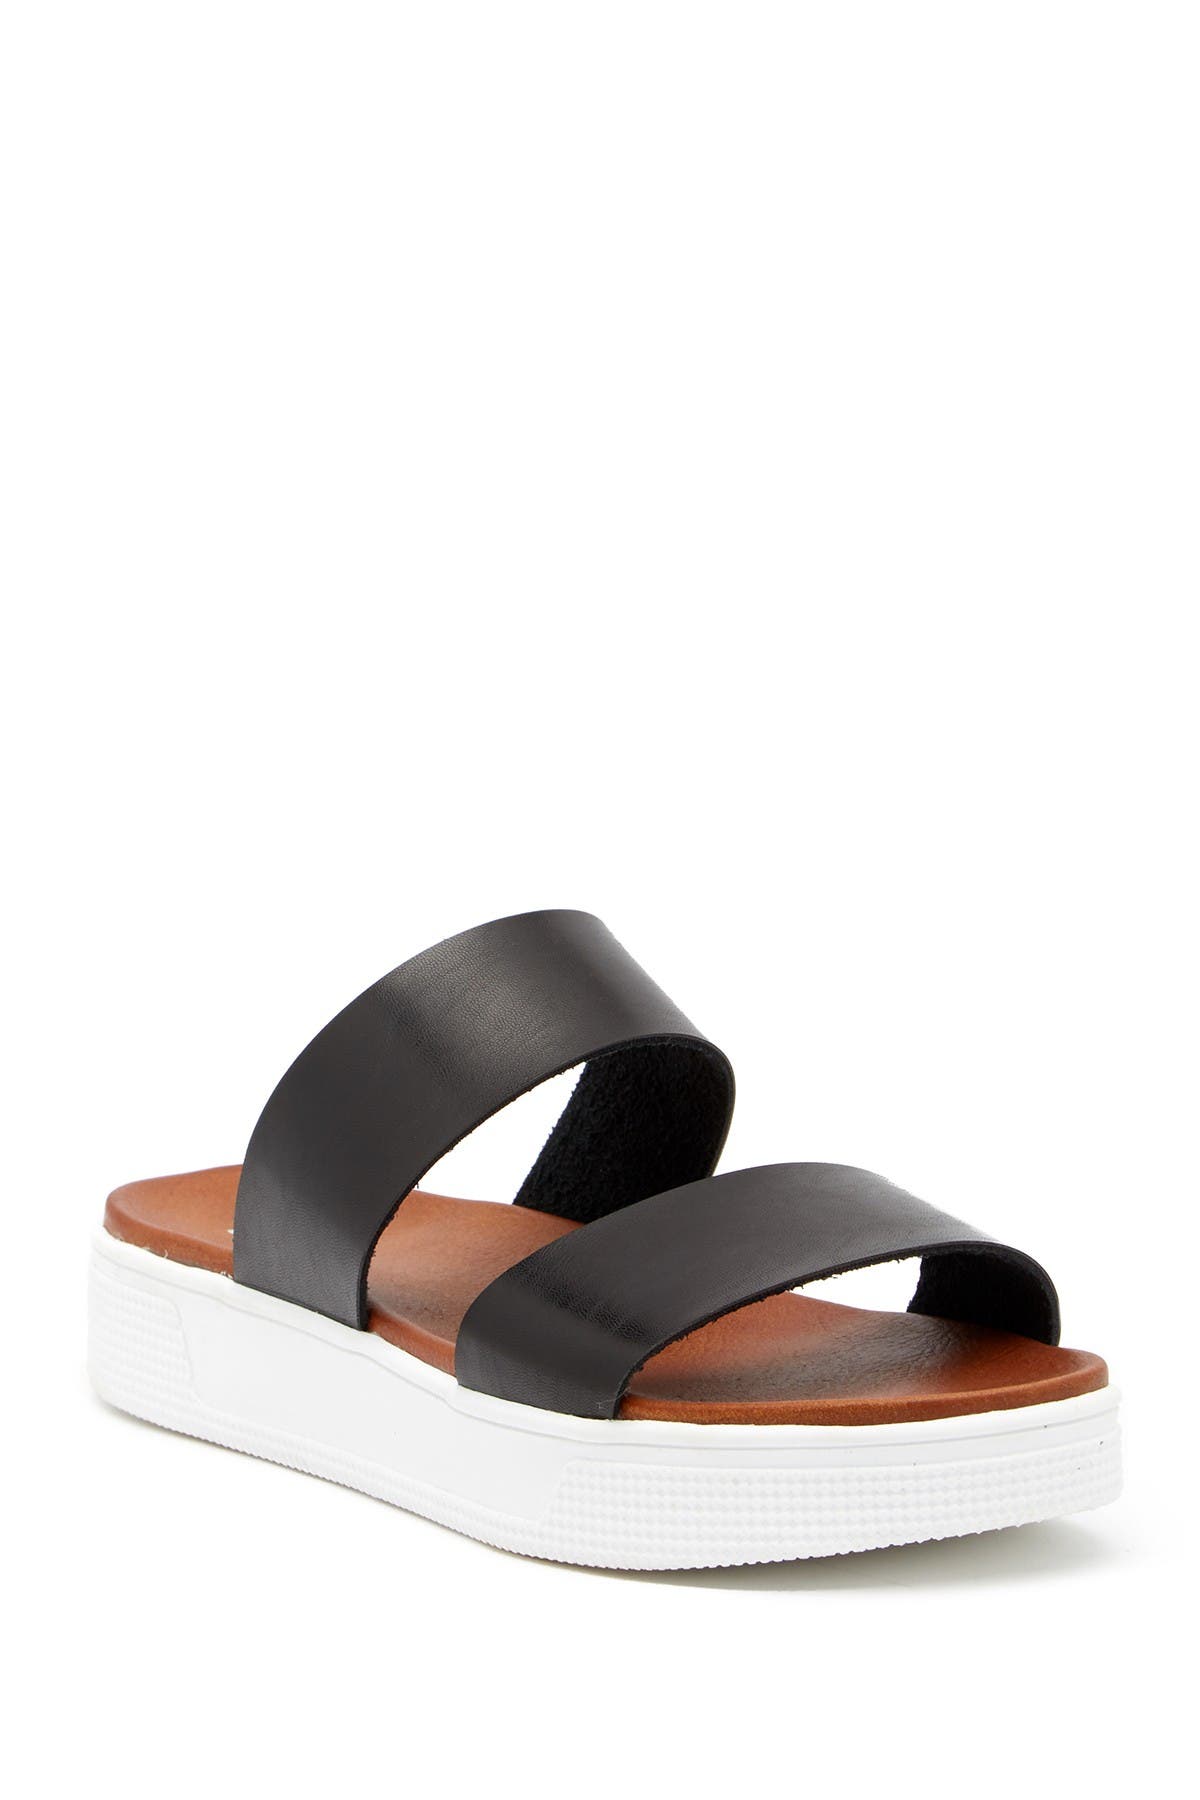 MIA | Saige Platform Slide Sandal 